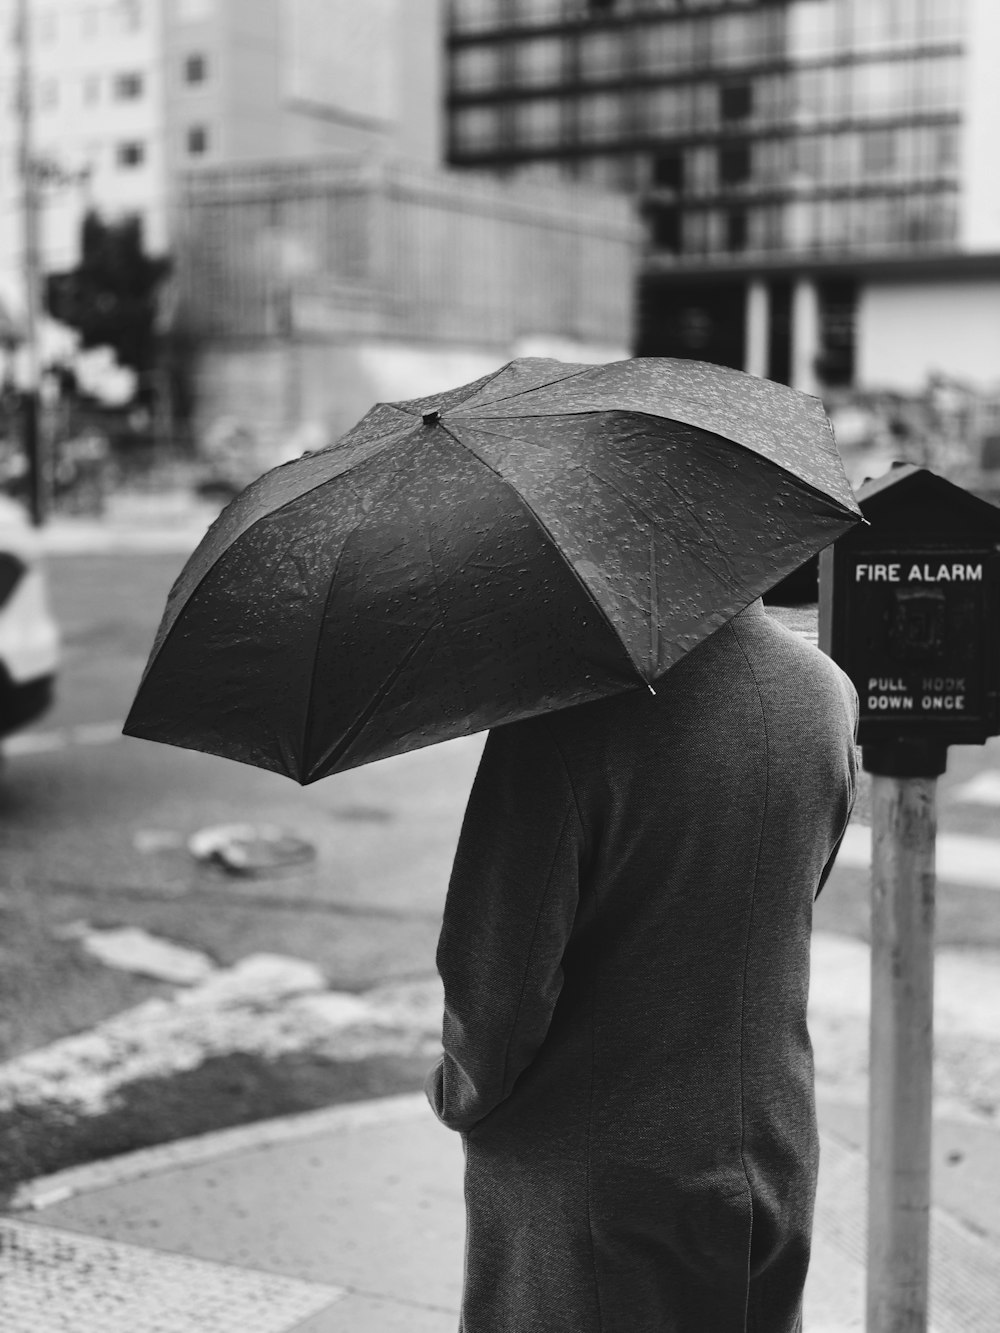 Photographie en niveaux de gris d’une personne tenant un parapluie